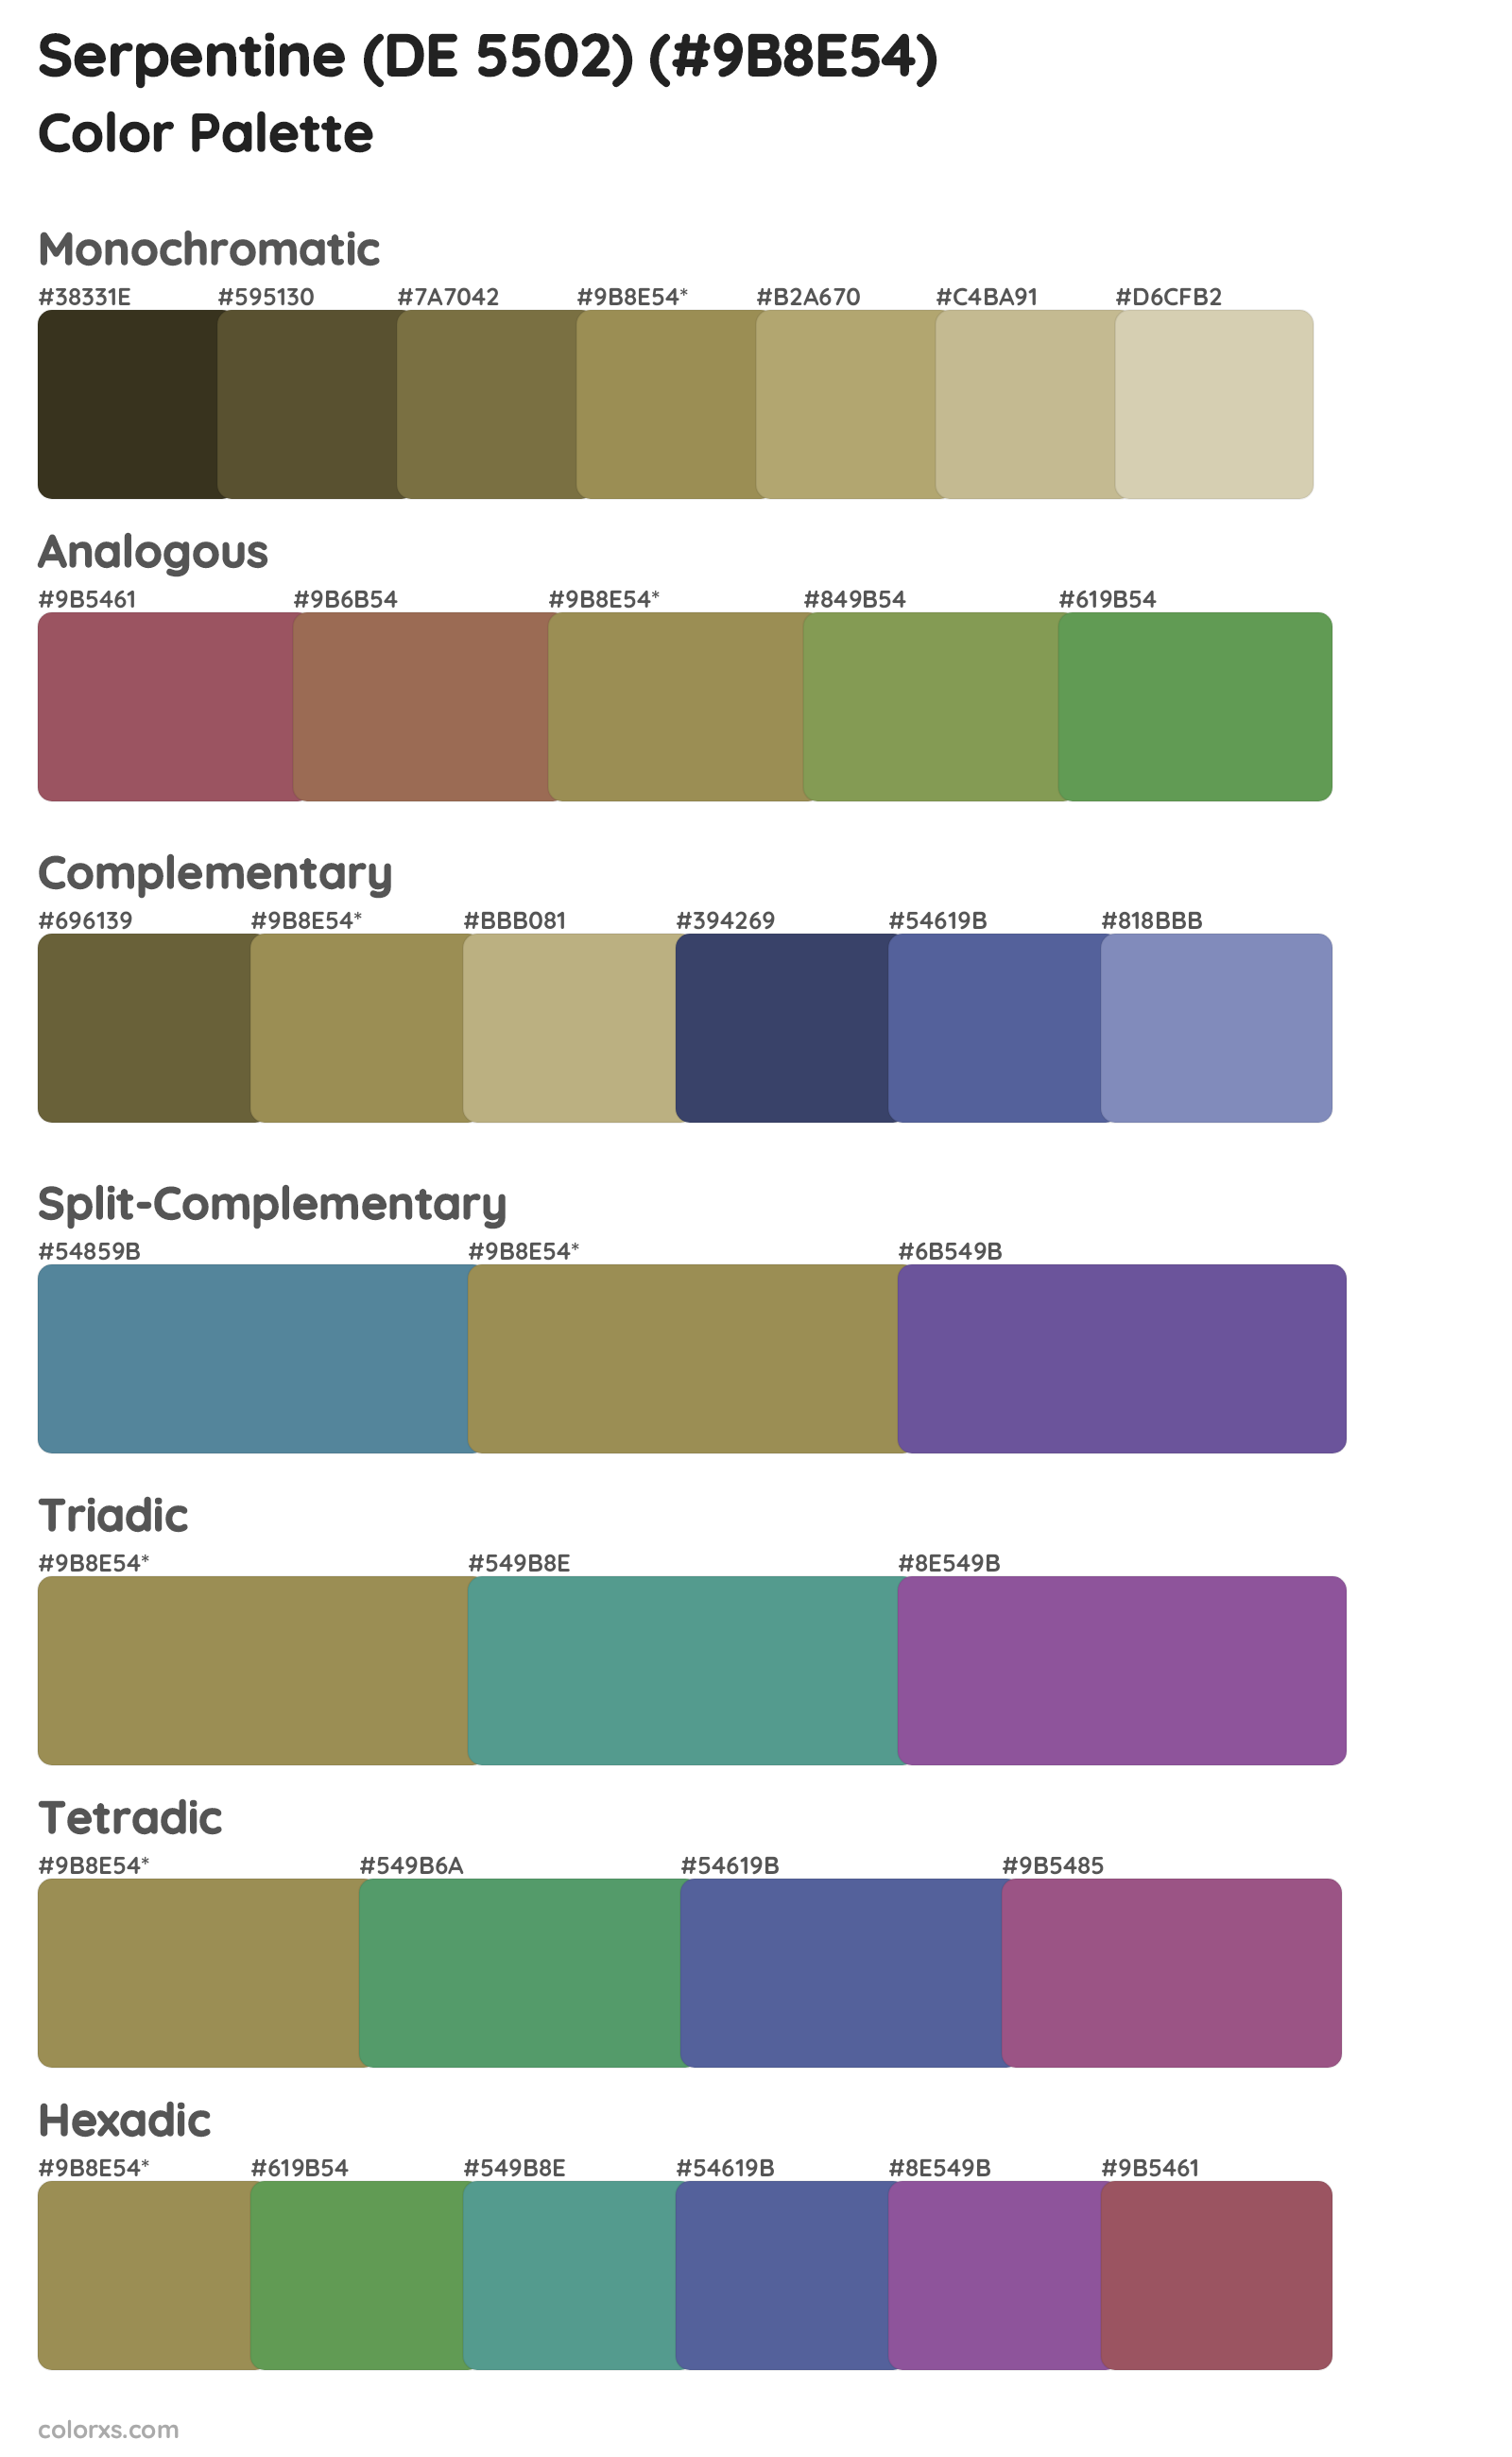 Serpentine (DE 5502) Color Scheme Palettes